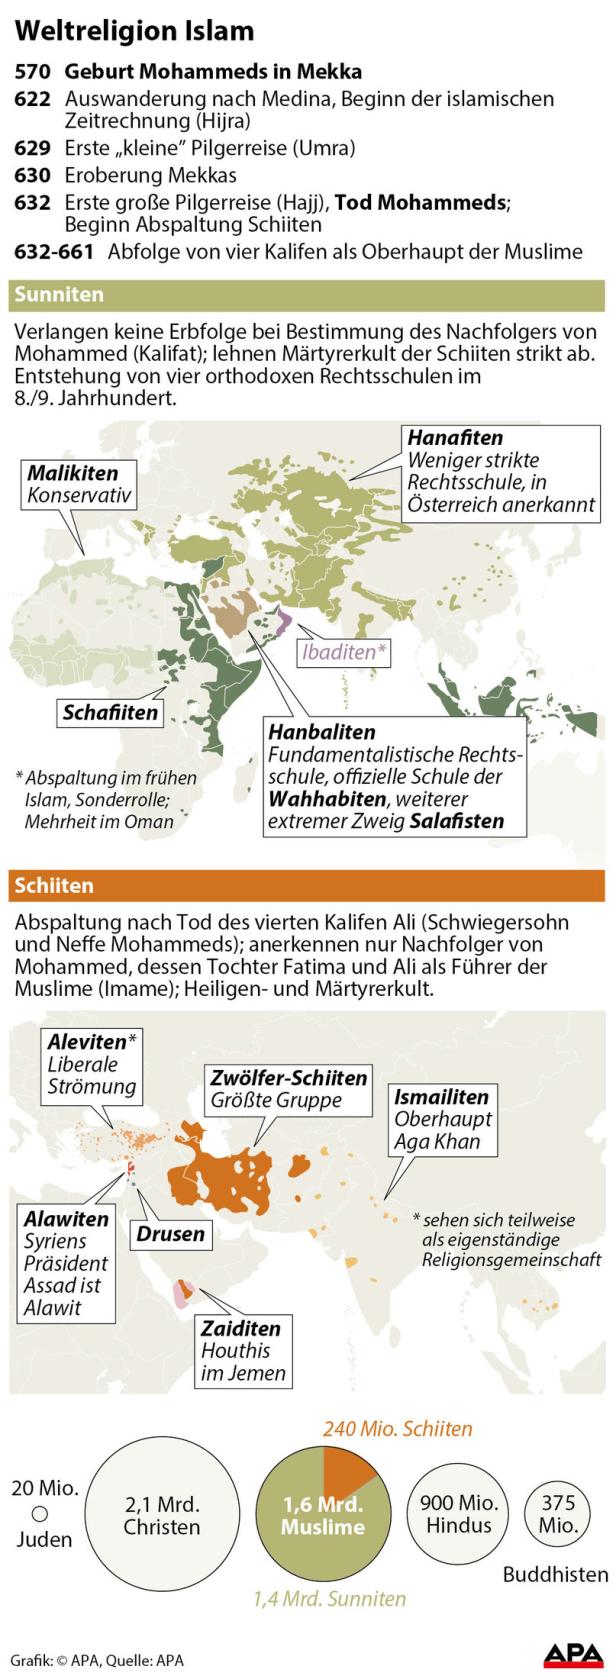 Ursachen des Konflikts von Schiiten und Sunniten